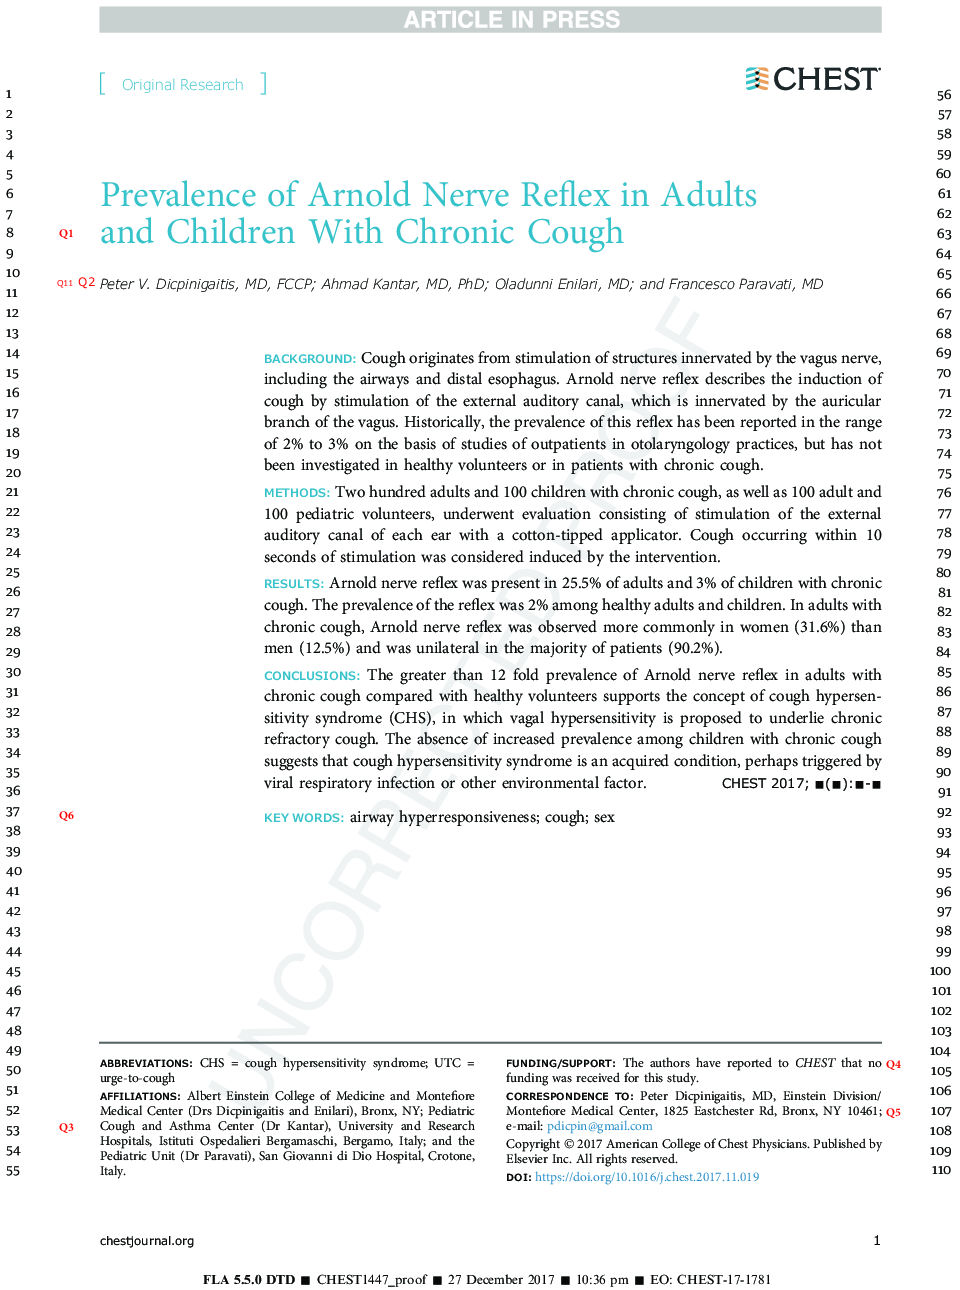 شیوع عصب آرنولد در بزرگسالان و کودکان مبتلا به سرفه مزمن 